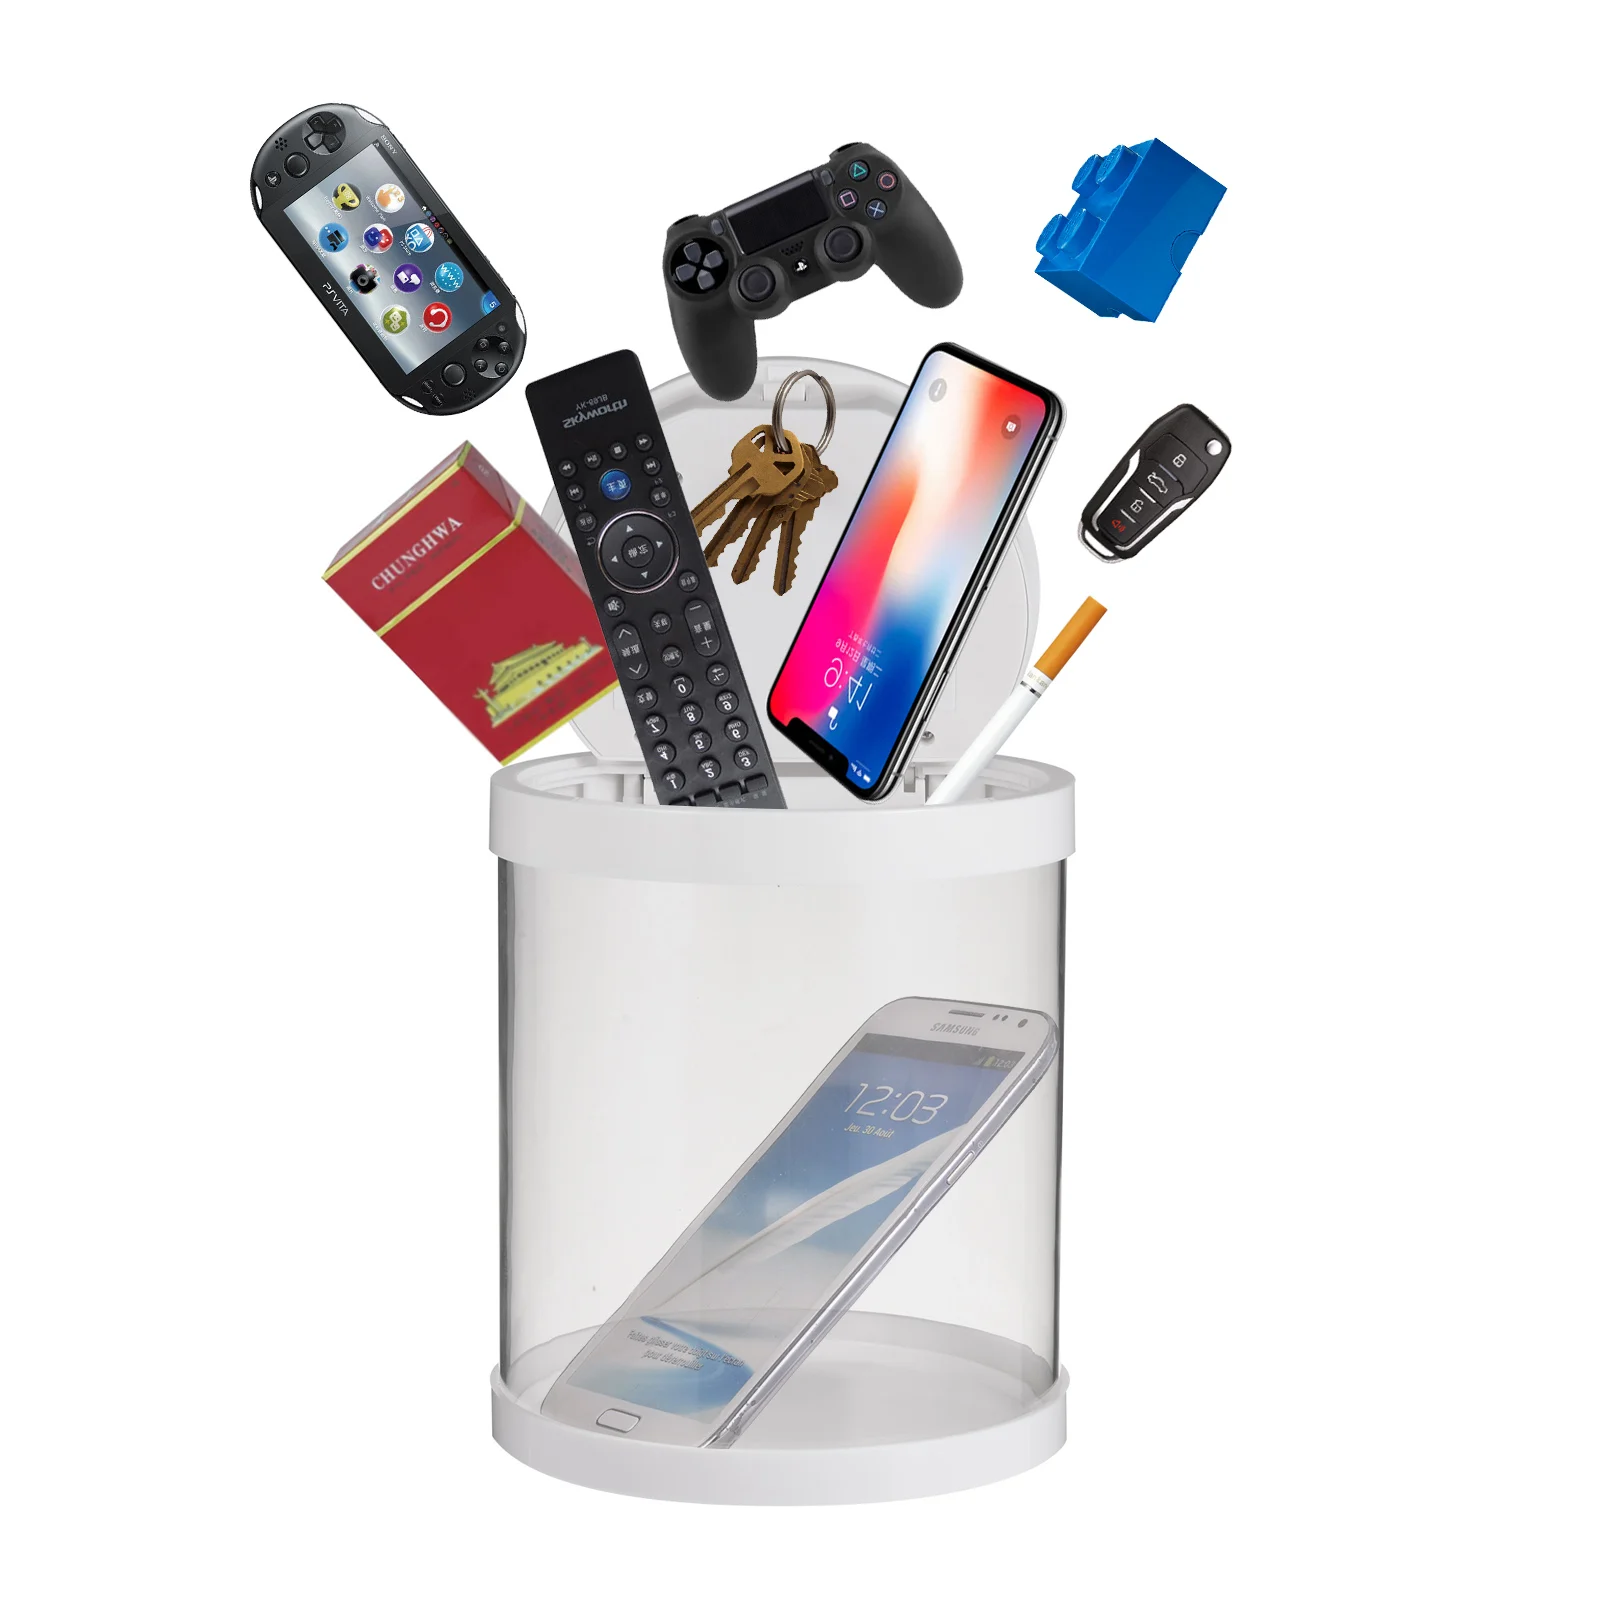 

Коробка с электронным таймером, Многофункциональный замок для сигарет, игрушек, мобильных телефонов